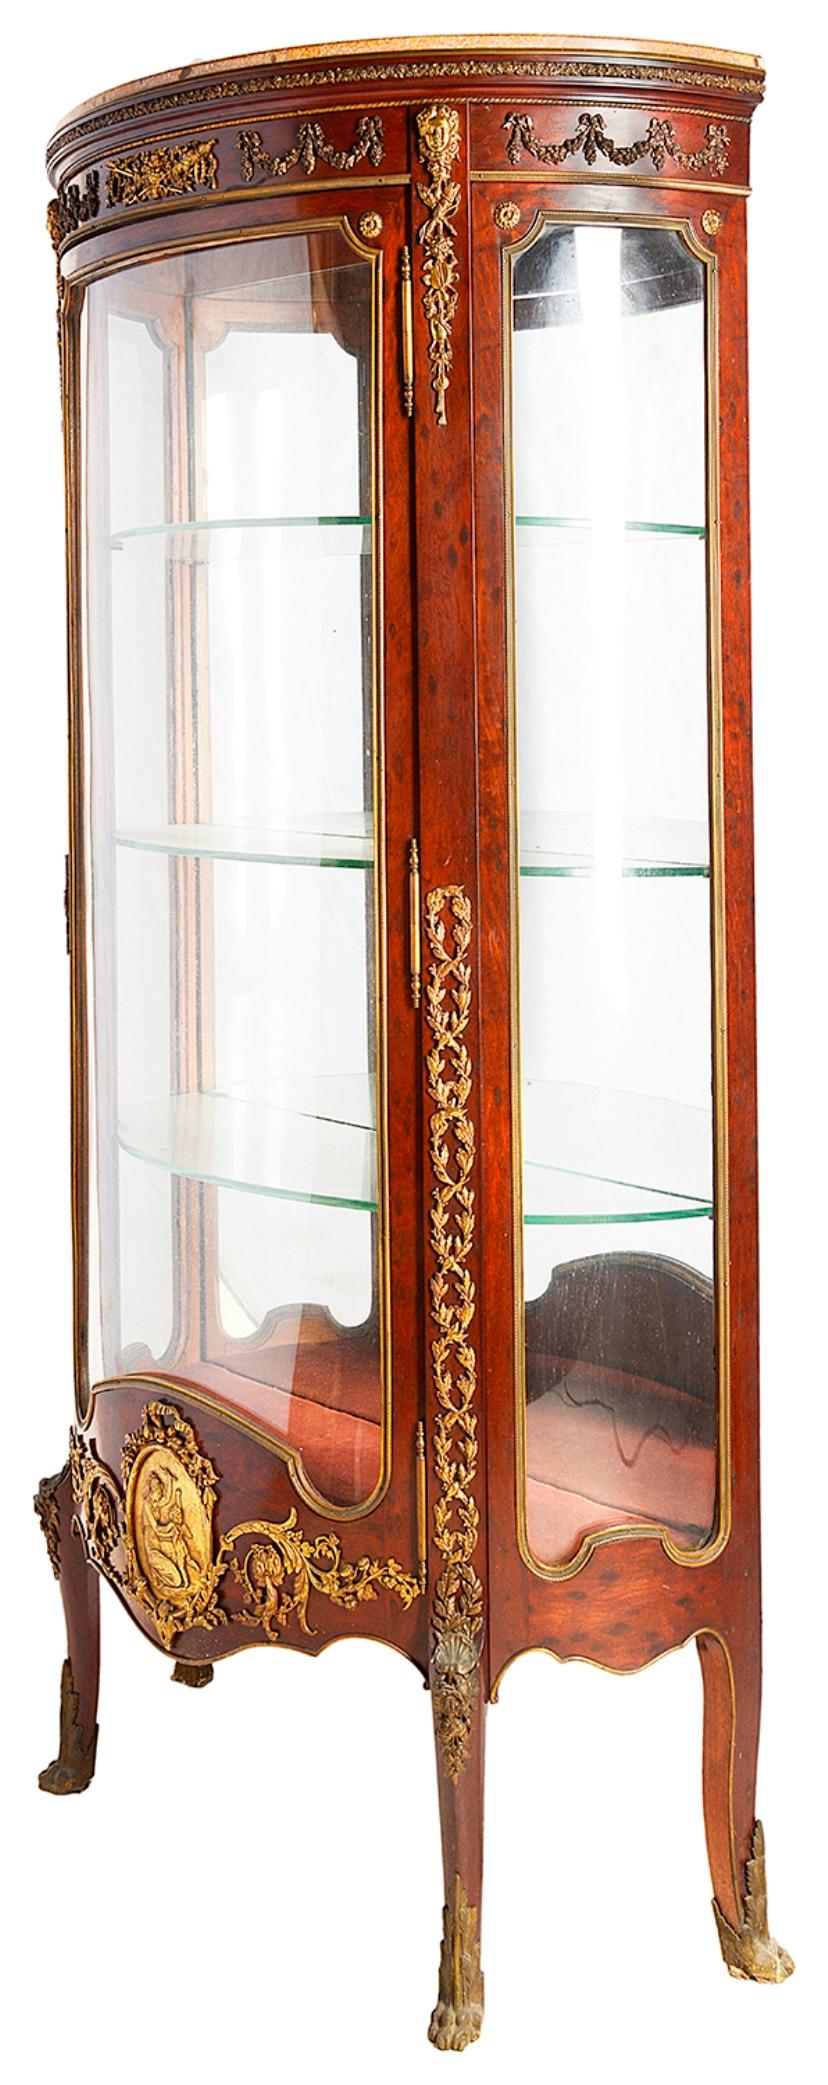 Eine gute Qualität Ende des 19. Jahrhunderts Plum Pudding Mahagoni Louis XVI-Stil Vitrine, mit einer Marmorplatte, vergoldet Ormolu Beschläge, geformte Glasscheiben an der Tür und an den Seiten, drei Glasböden, gespiegelt zurück und hob auf elegante